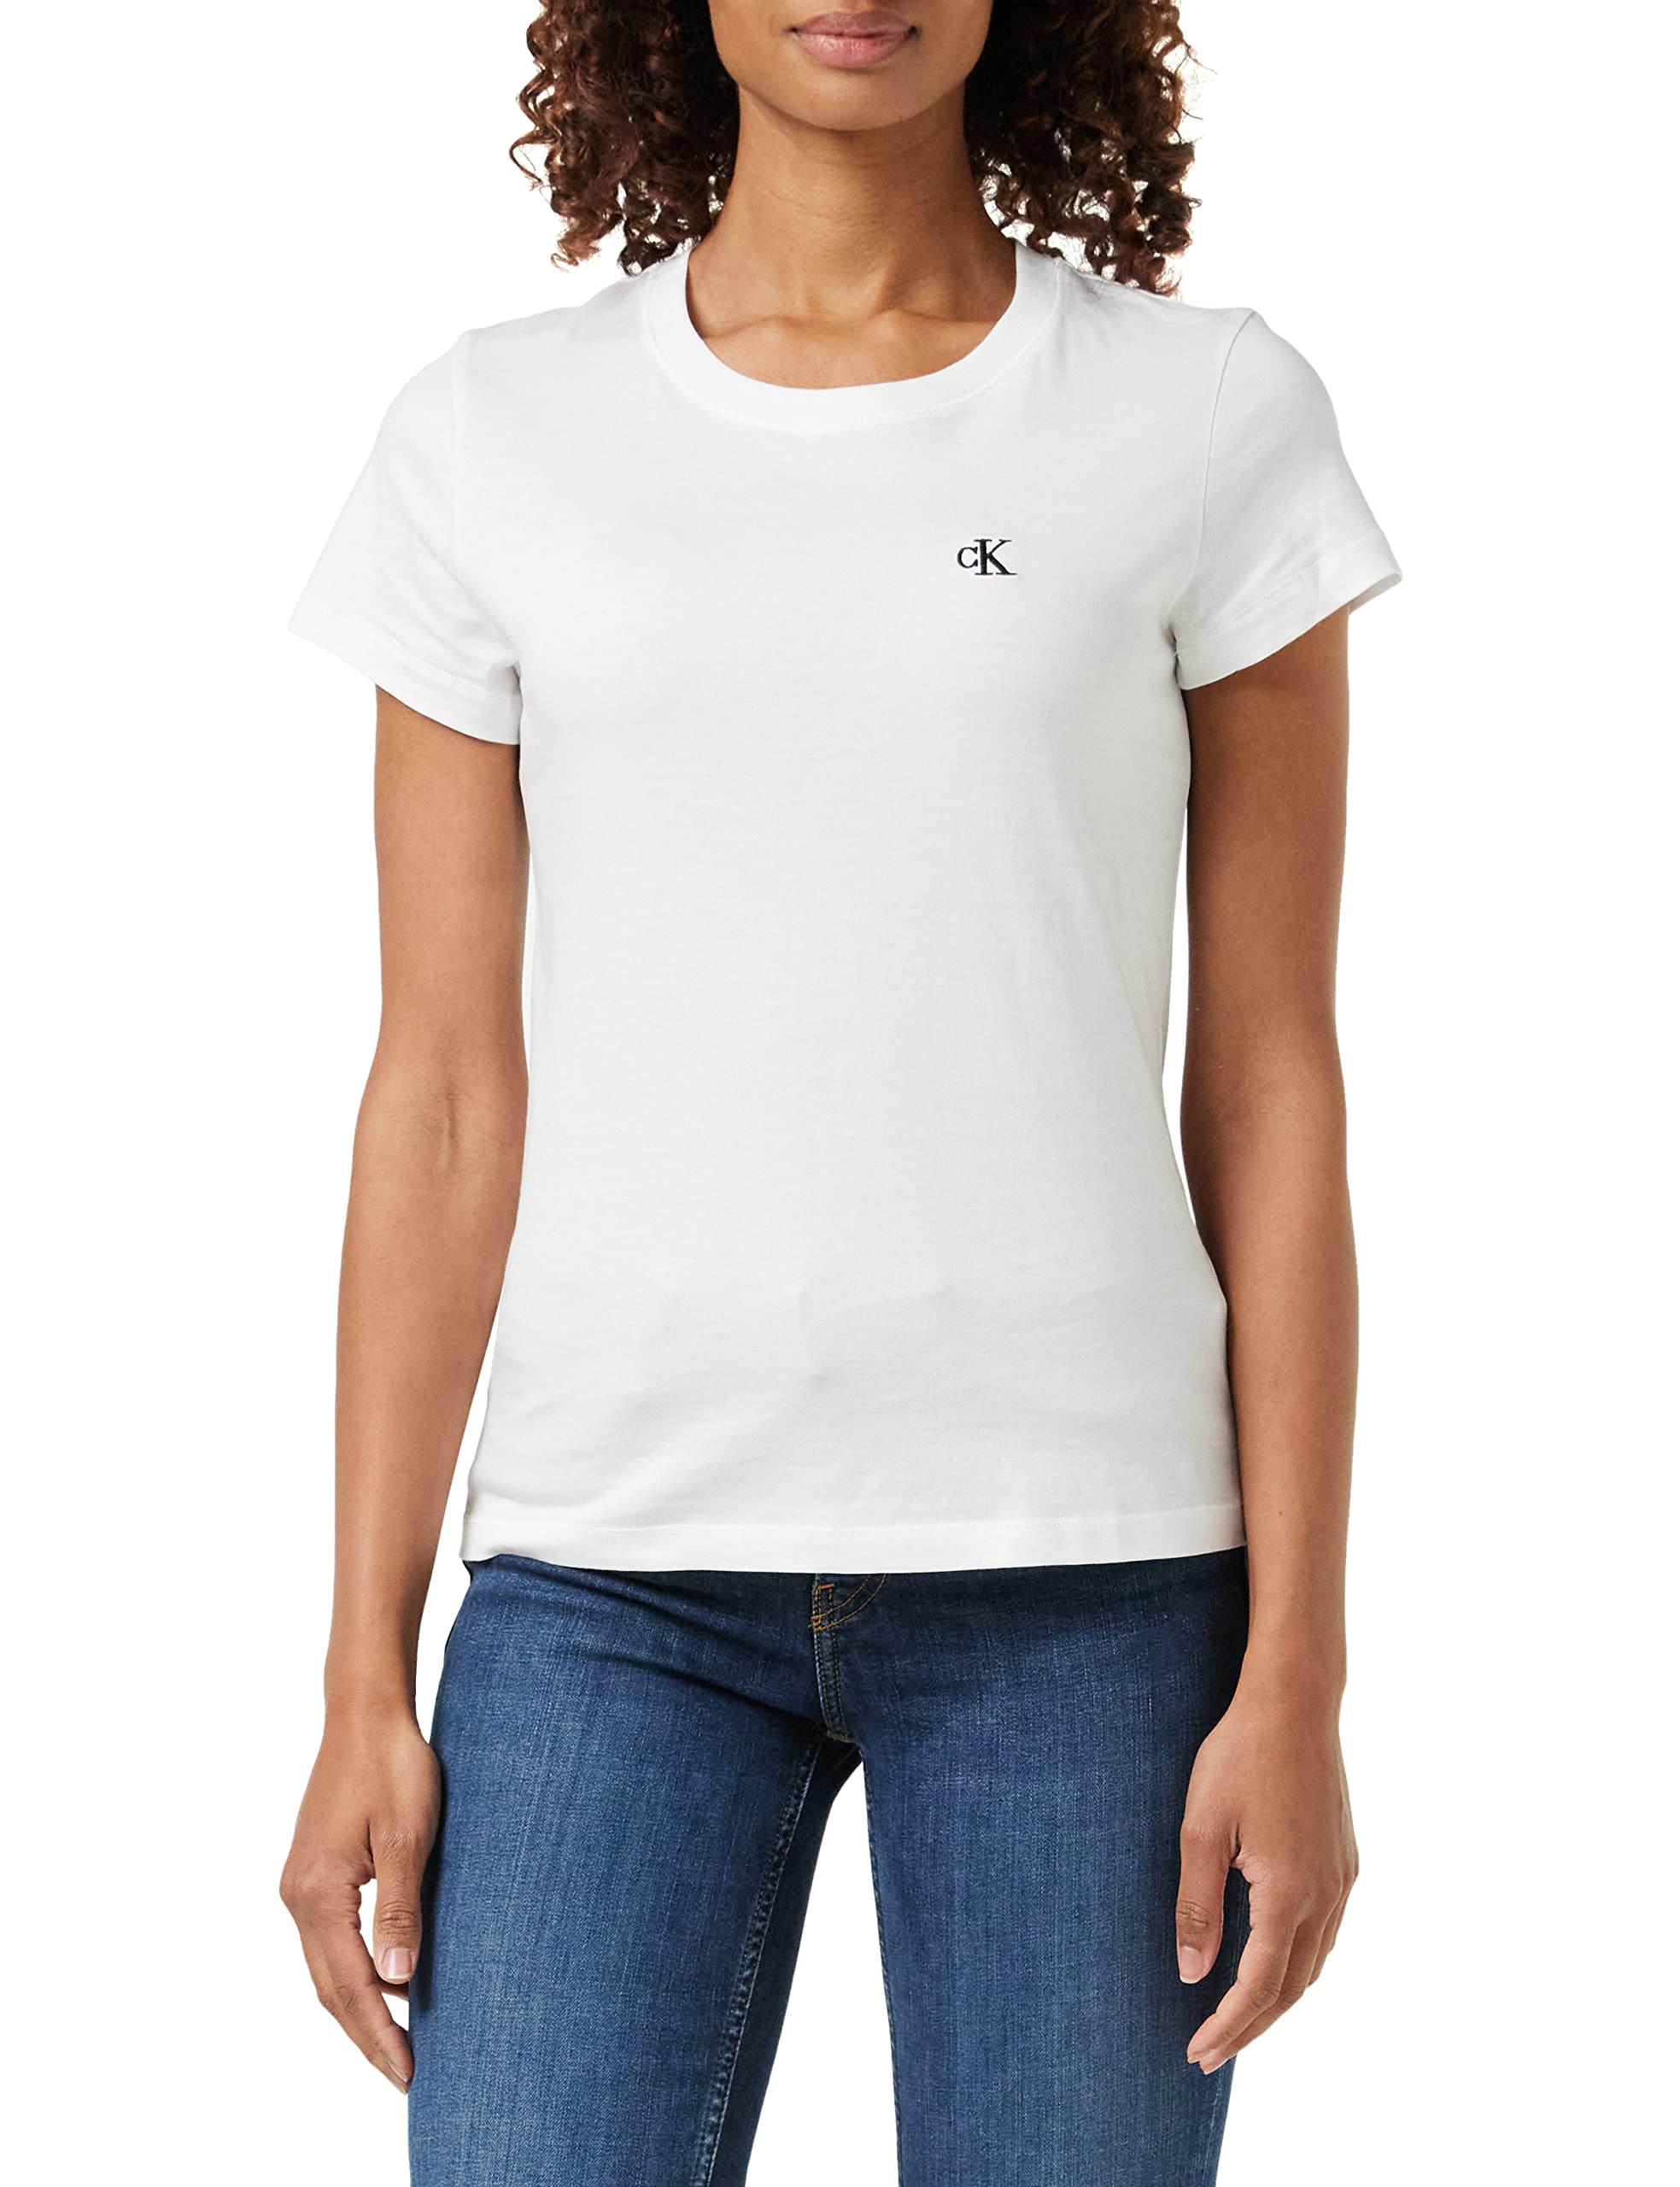 Calvin Klein Jeans Damen T-Shirt Kurzarm Ck Embroidery Rundhalsausschnitt, Weiß (Bright White), XS